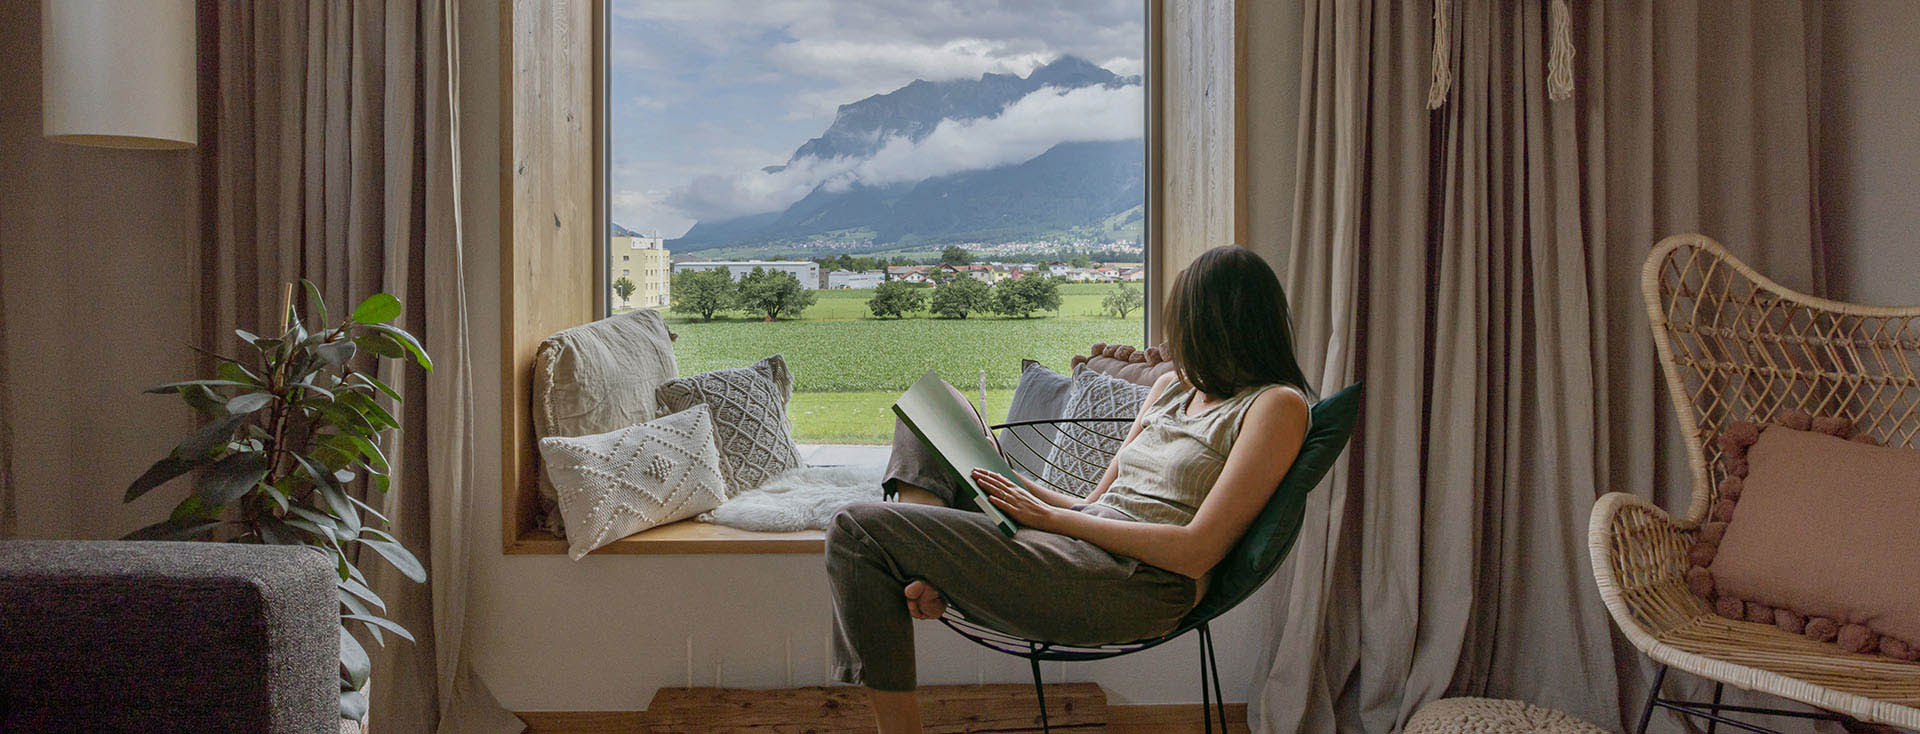 Une personne est assise tranquillement sur une chaise en train de lire un livre, avec vue sur un paysage idyllique de montagnes et de champs verdoyants à travers une grande fenêtre.